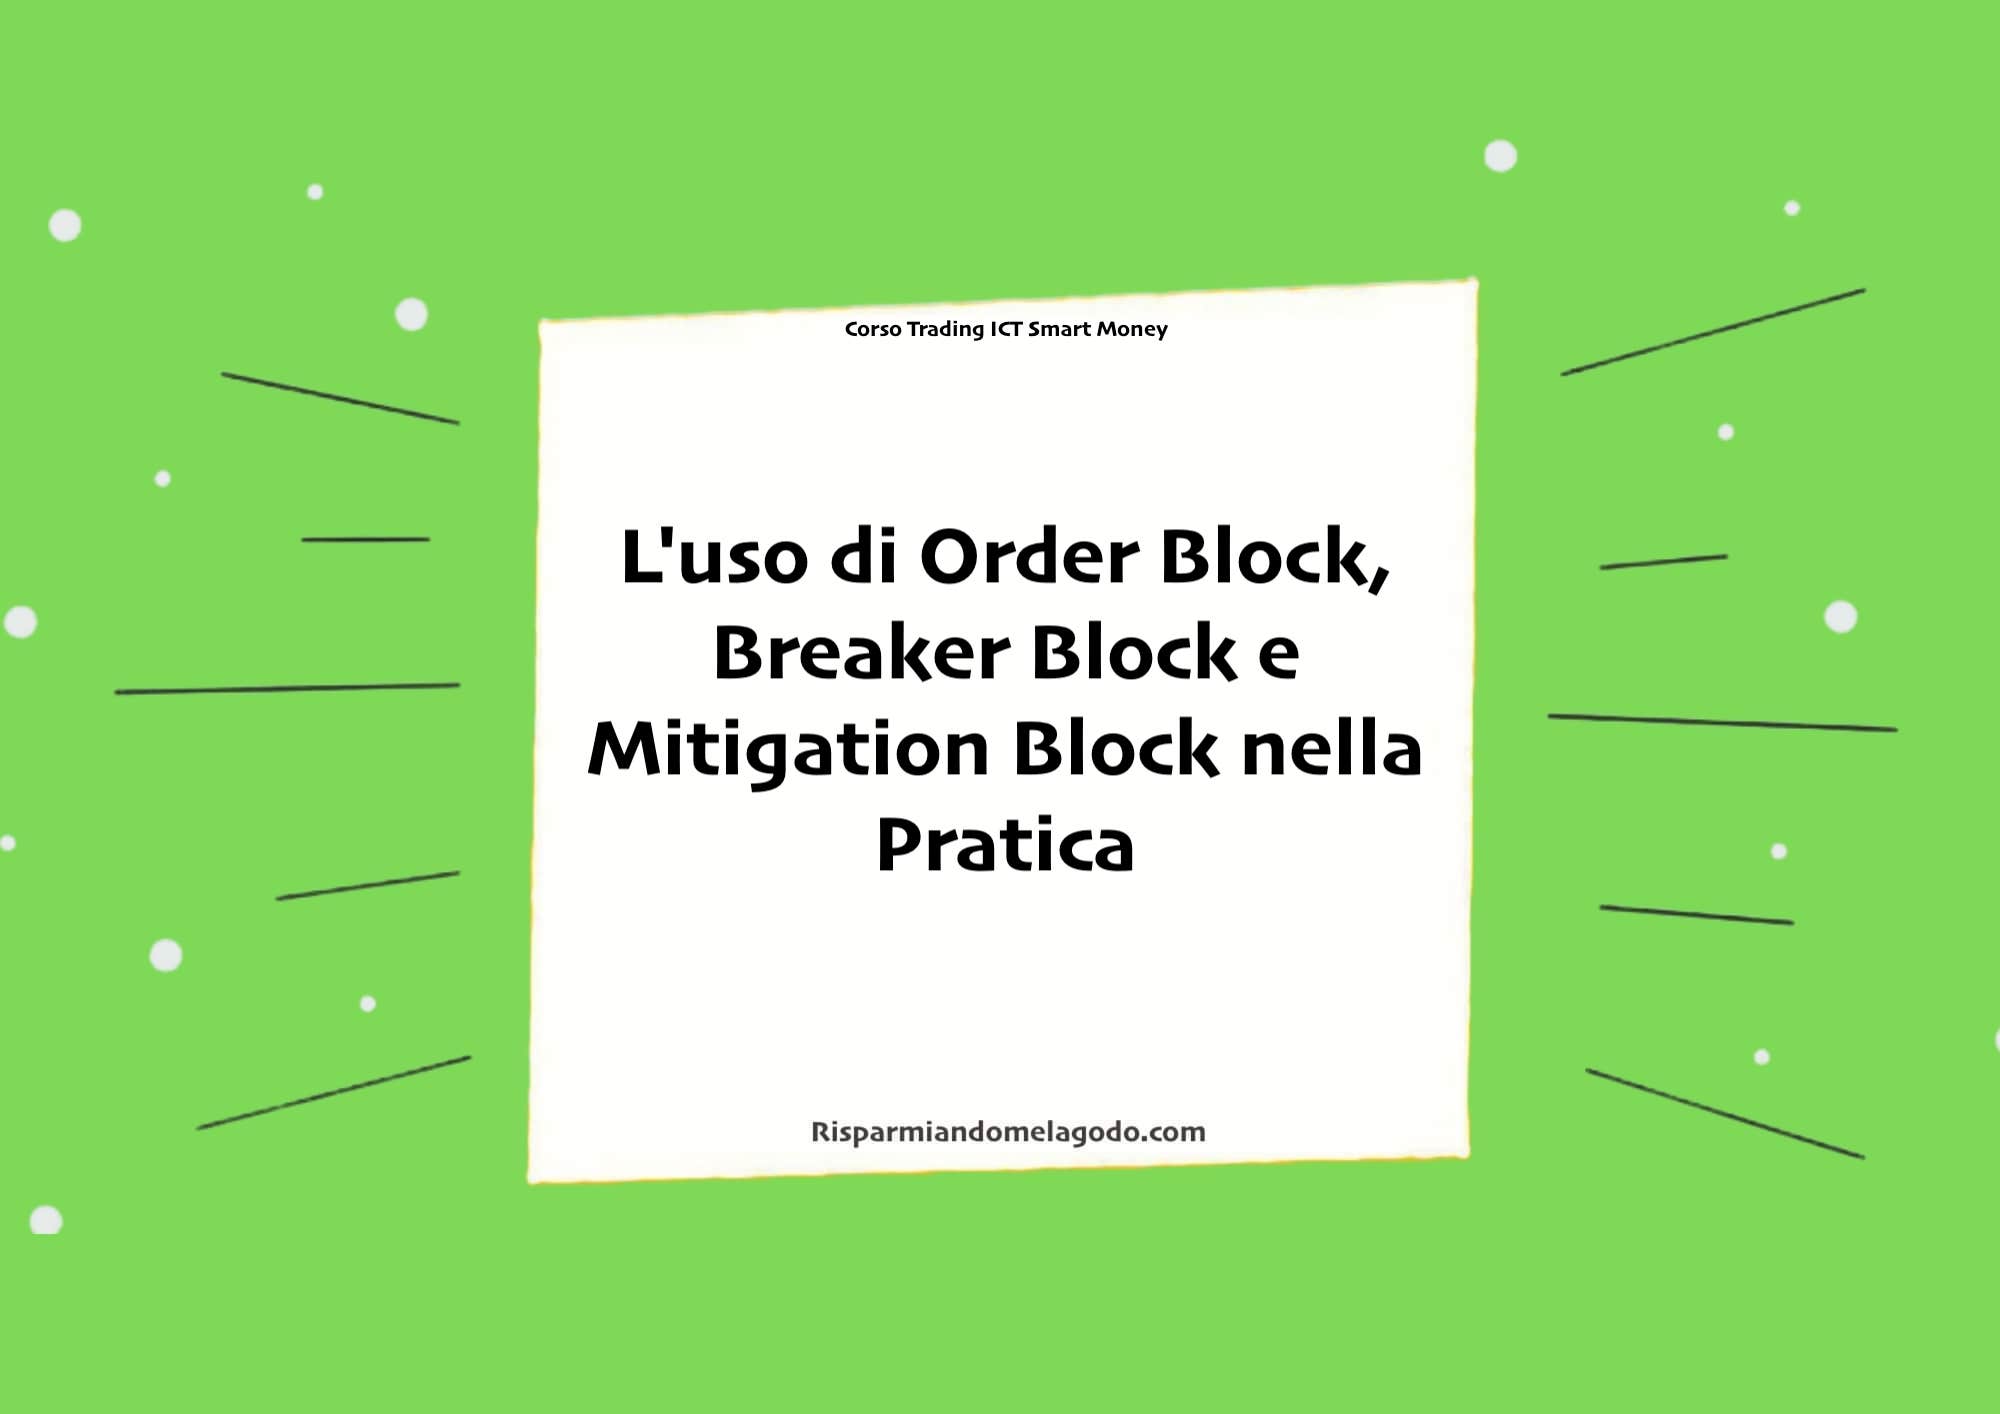 L'uso di Order Block, Breaker Block e Mitigation Block nella Pratica